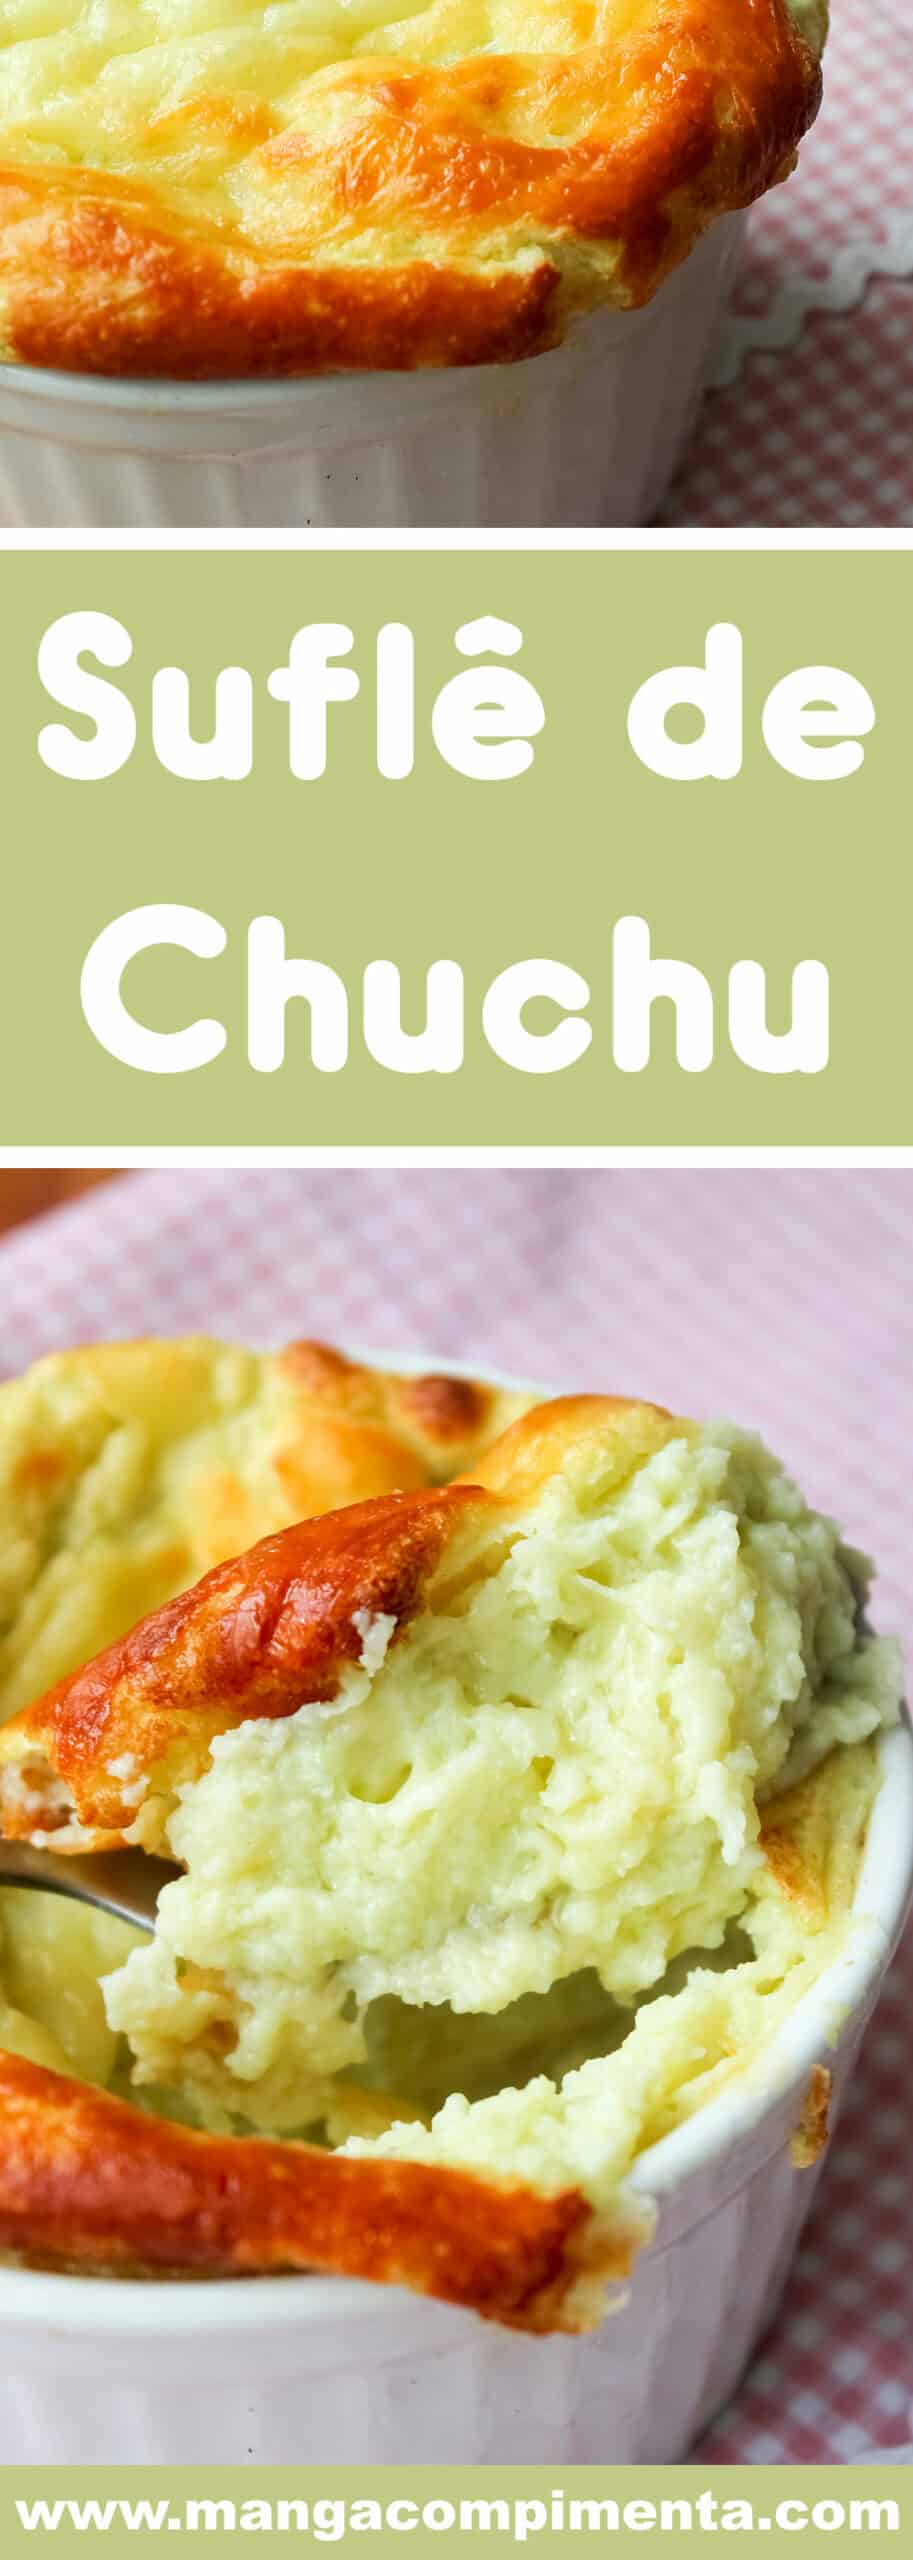 Receita de Suflê de Chuchu - prepare em casa para o almoço ou jantar da família nessa semana.